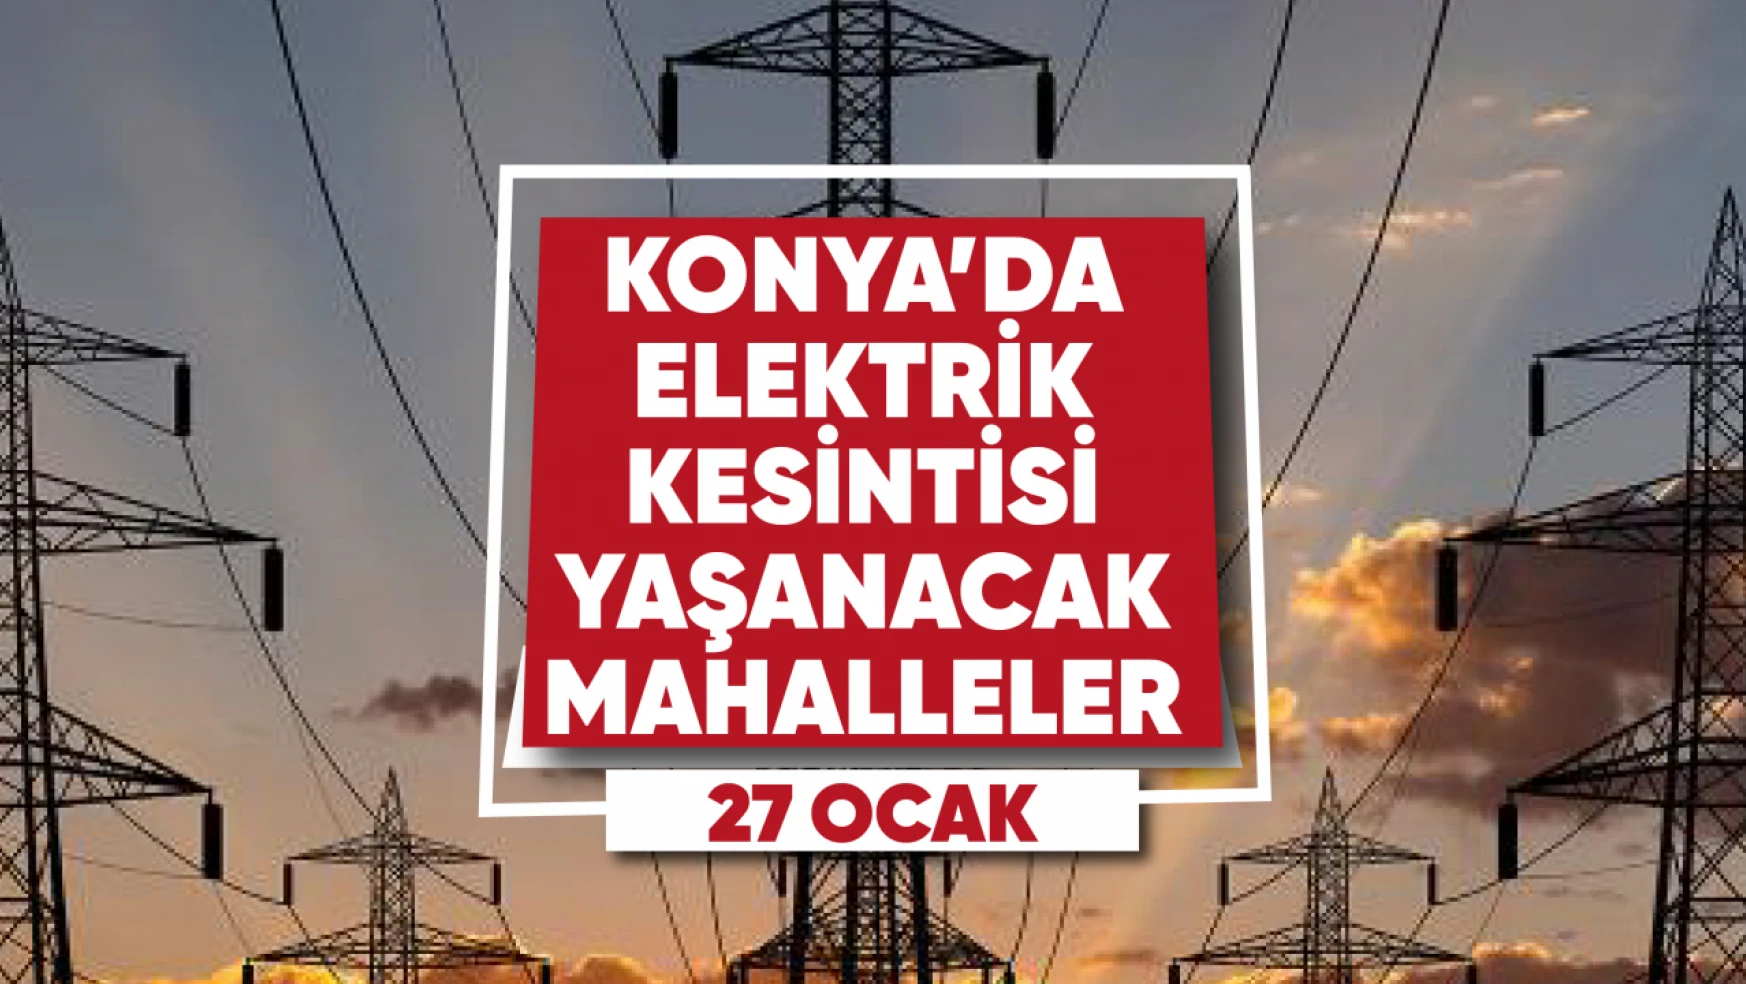 Konya'da elektrik kesintisi yaşanacak mahalle ve sokaklar (27 Ocak 2023)